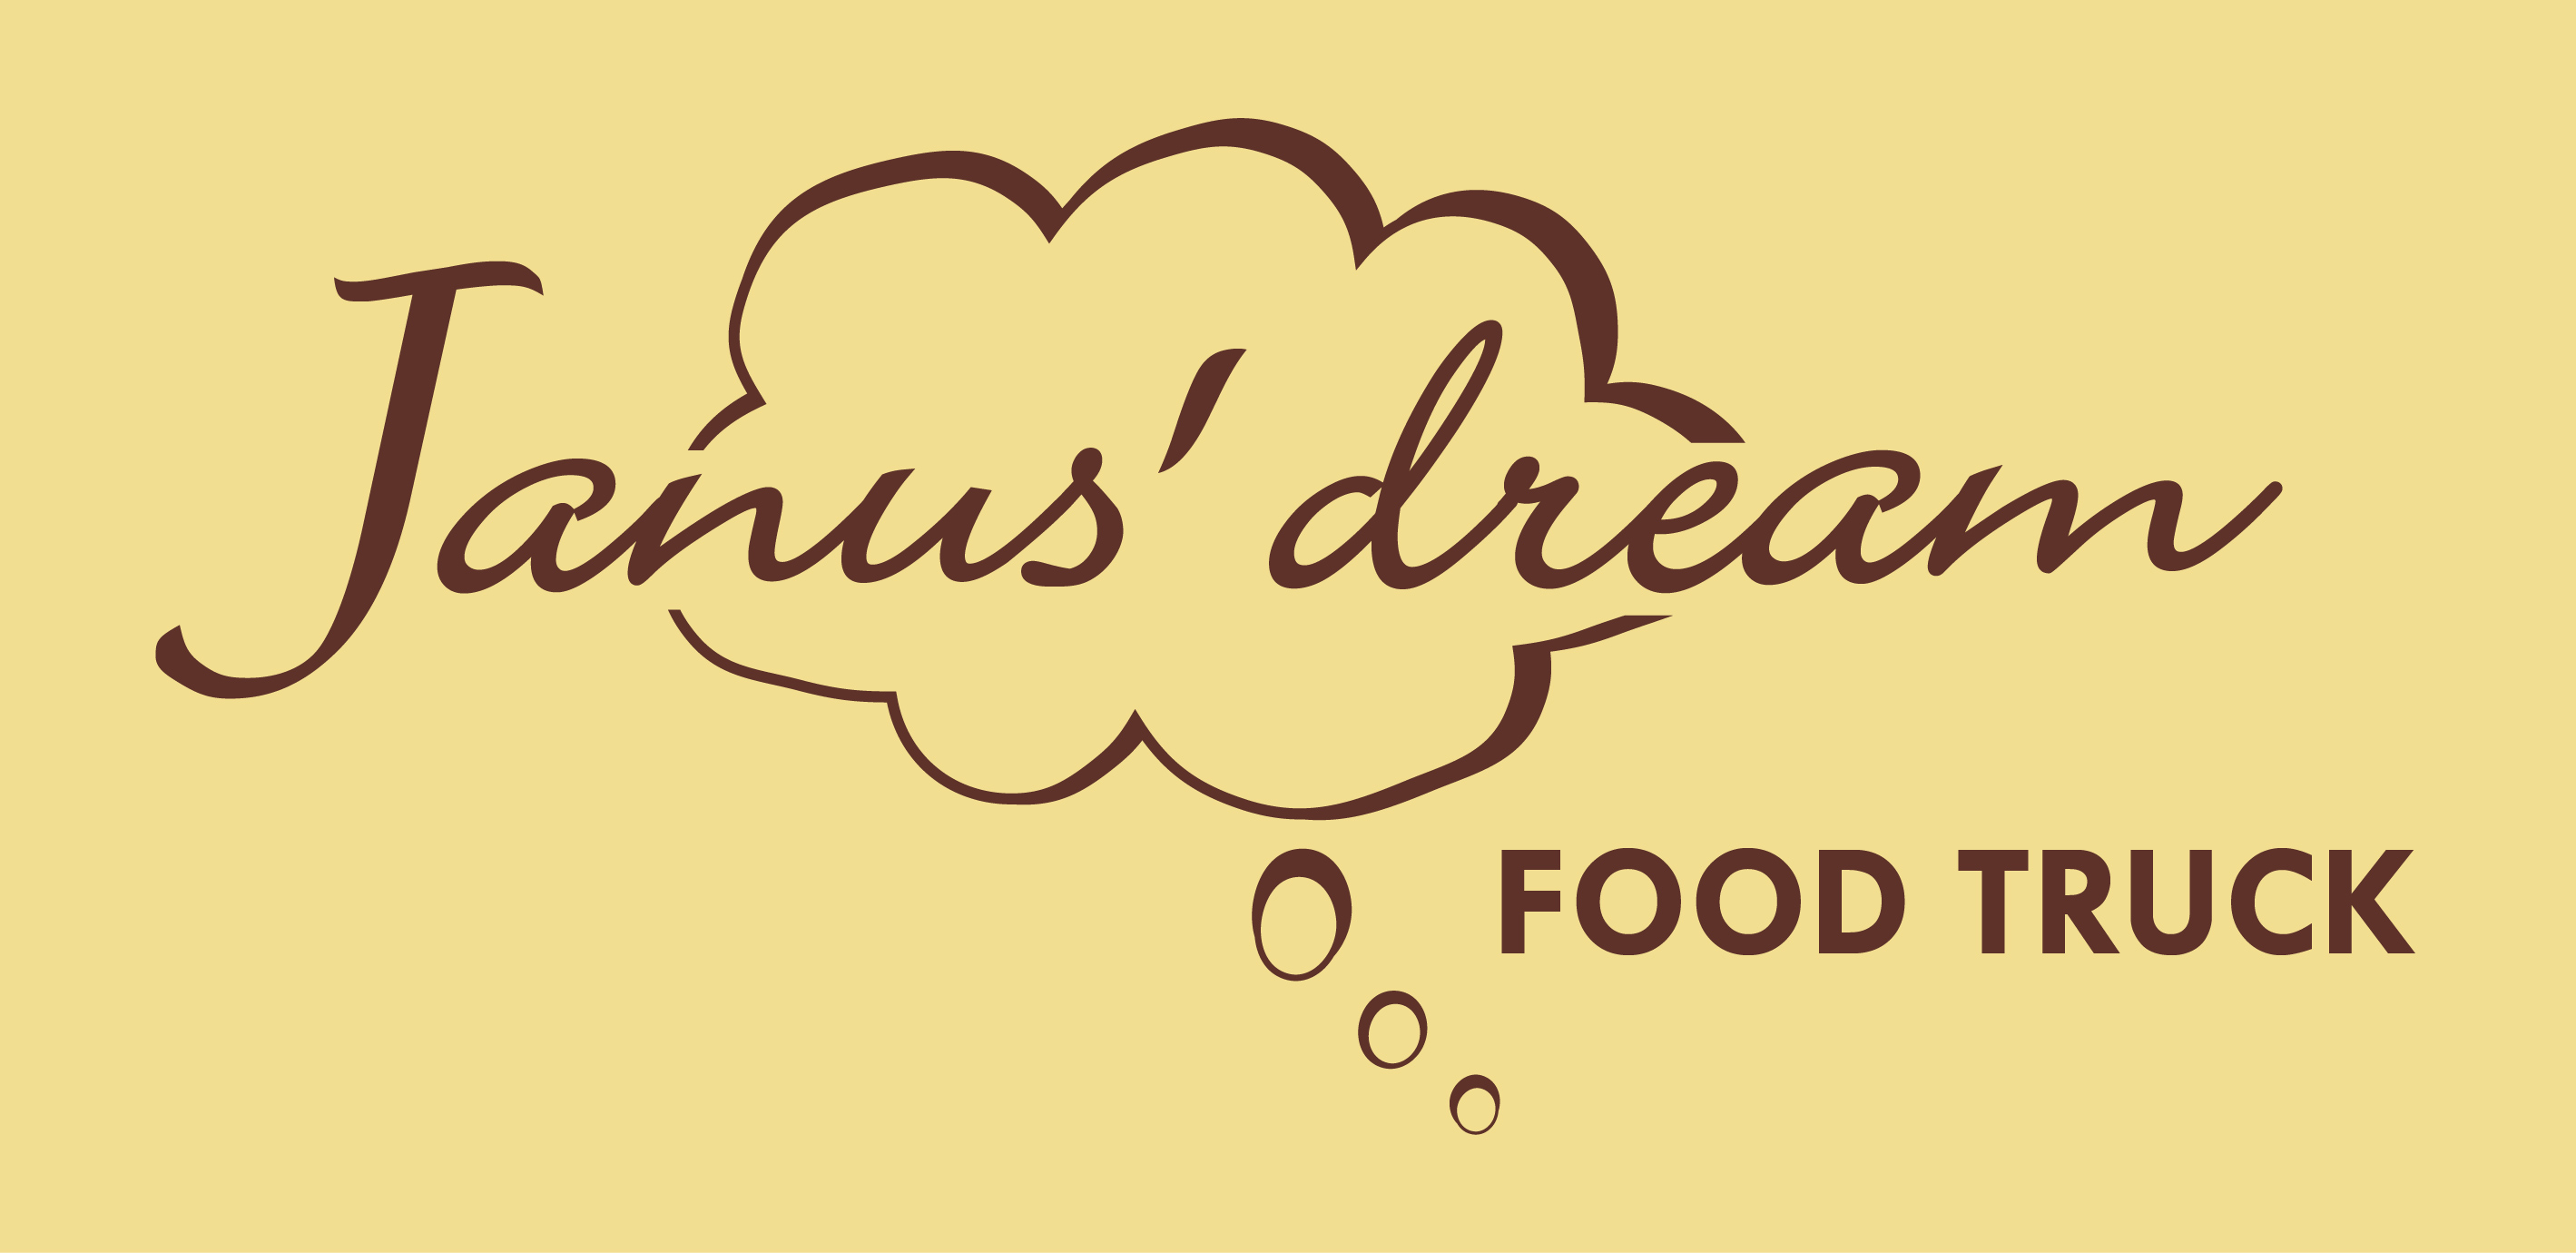 Janus dream